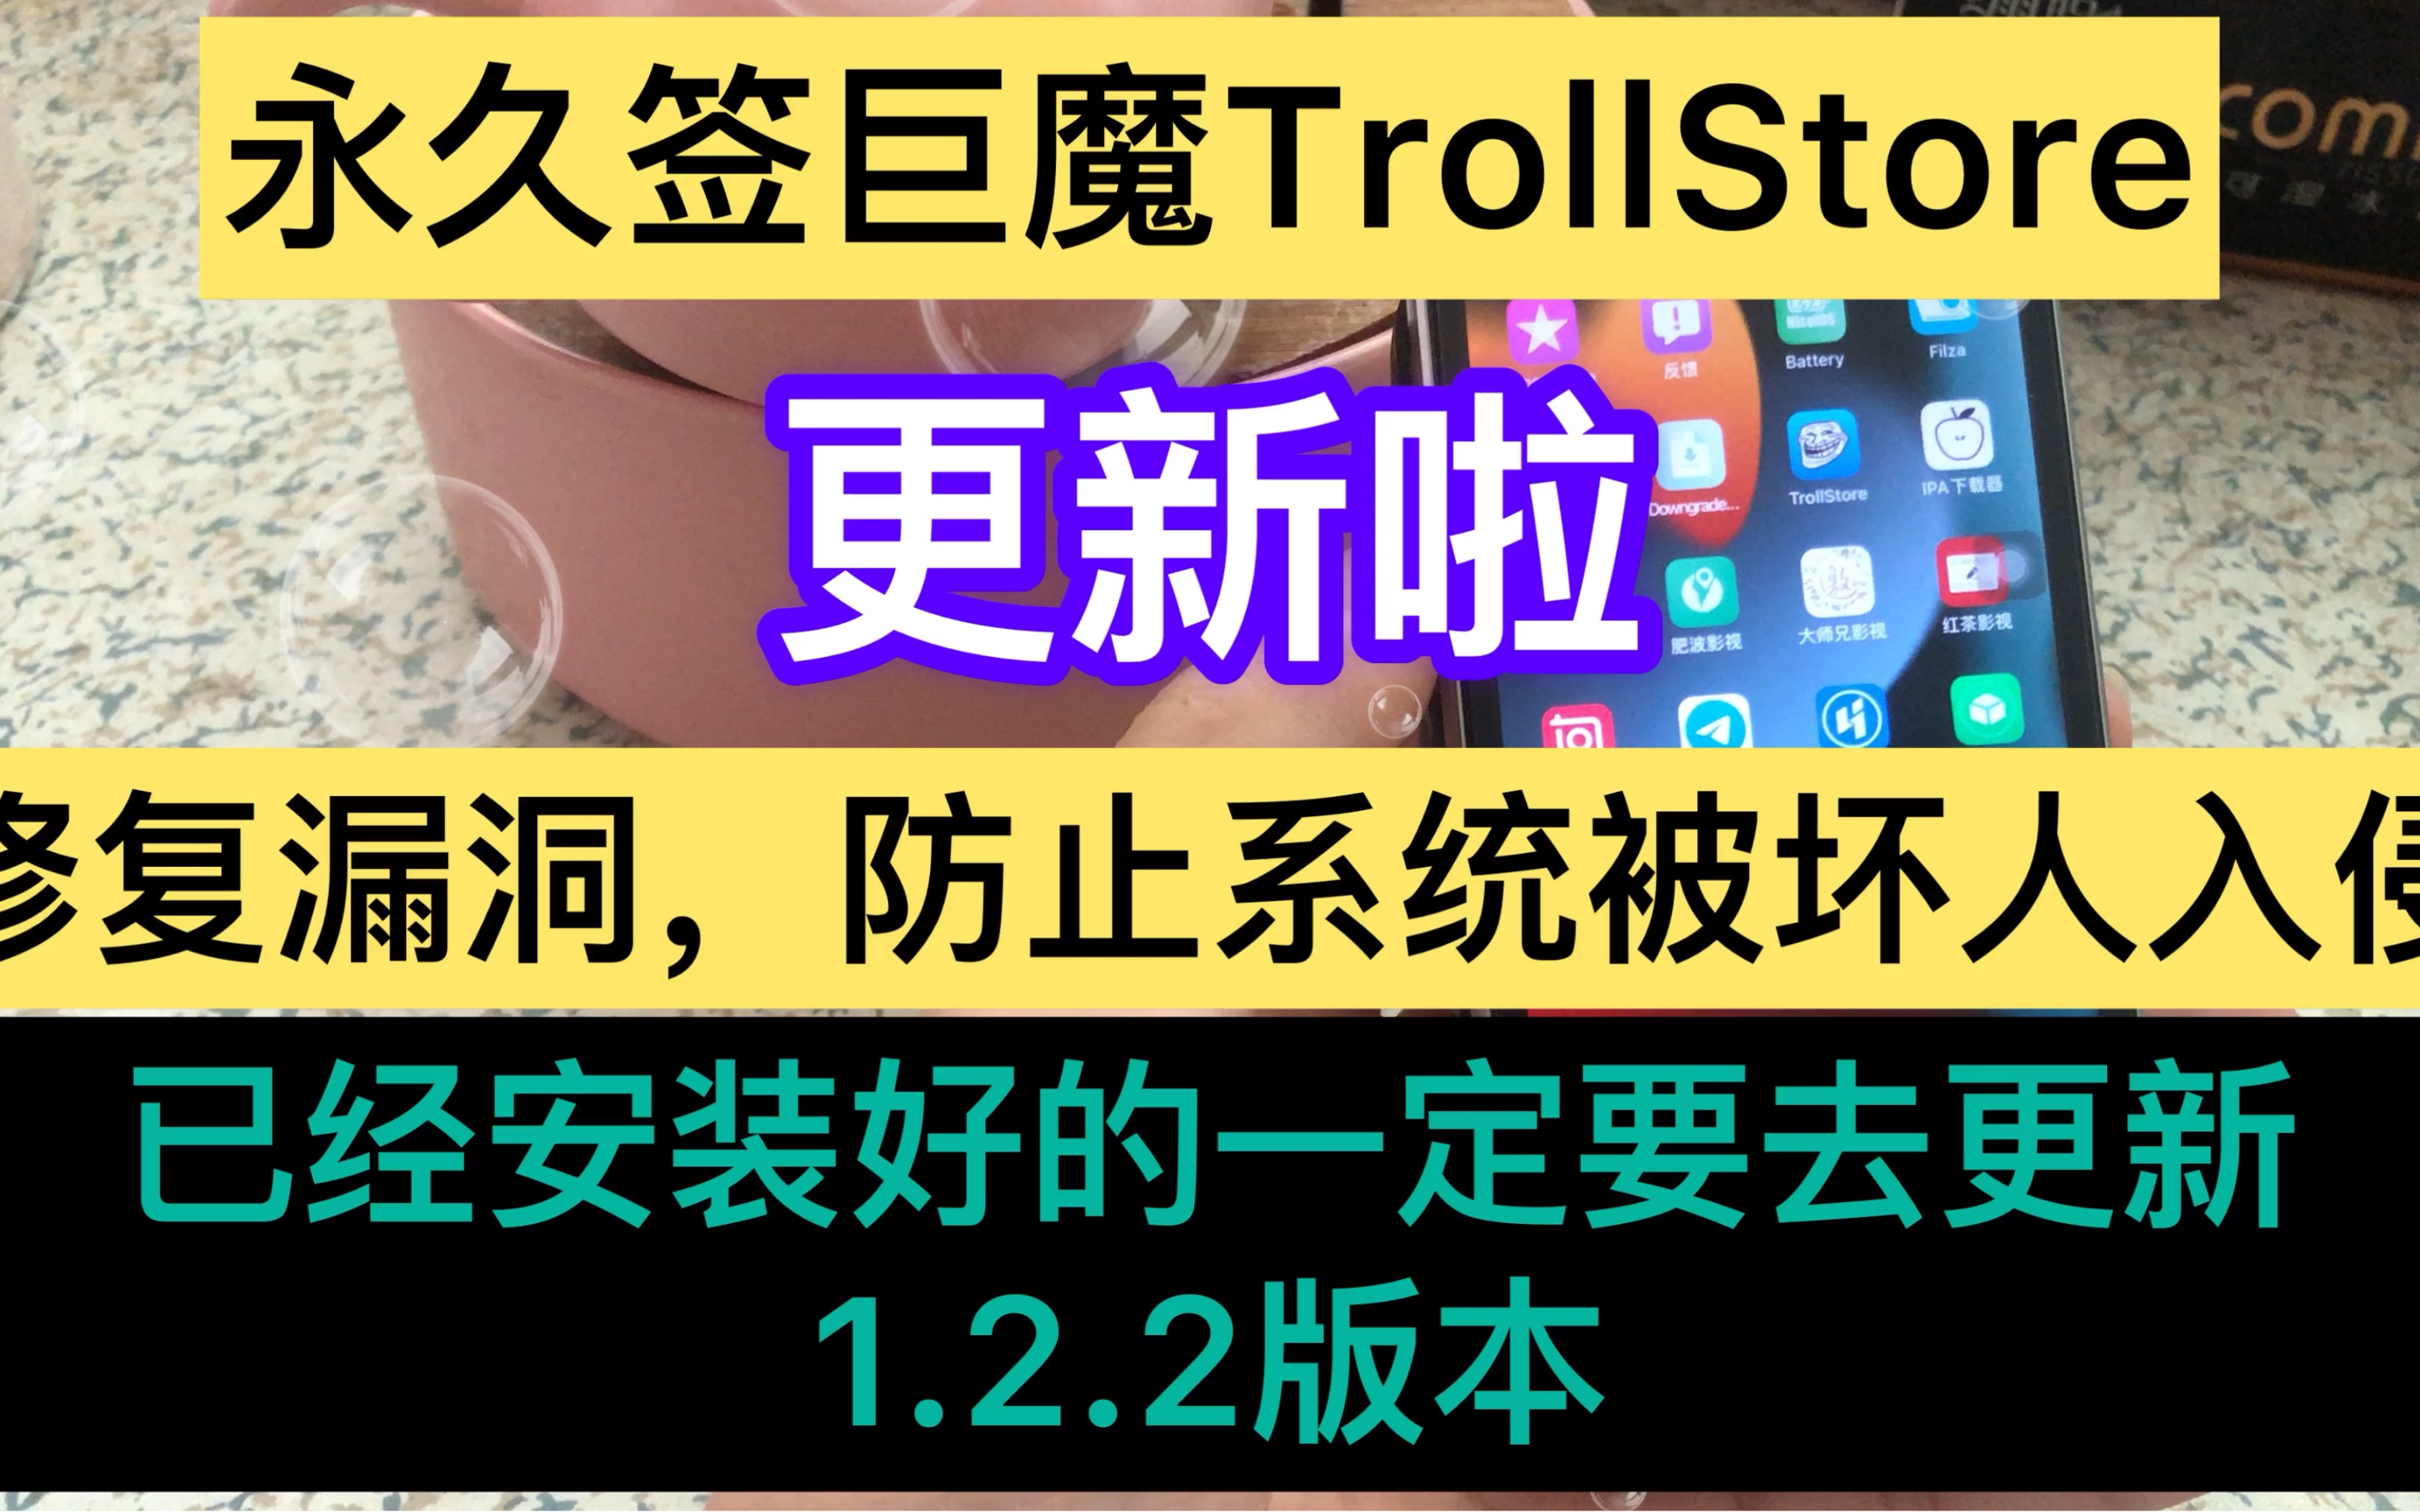 TrollStore汉化官网 | 芥子空间